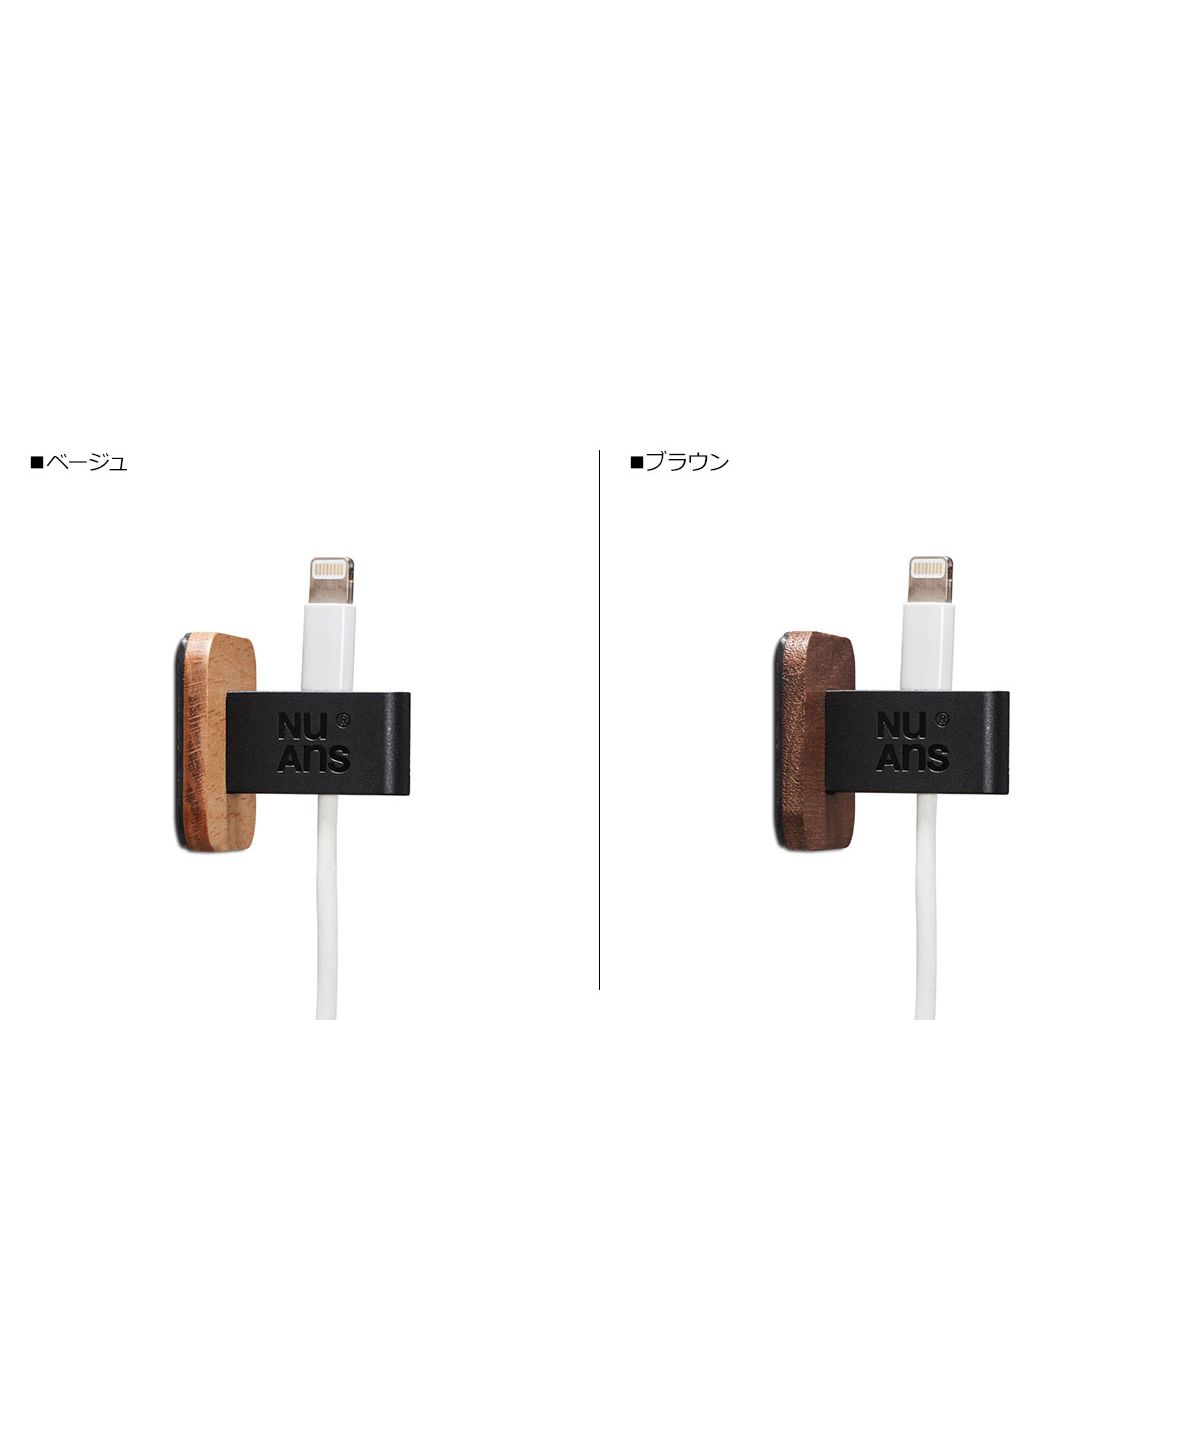 NuAns ニュアンス ケーブル ホルダー 2個セット iPhone スマホ 携帯 USBケーブル アイフォン スマートフォン TAGKEEPER  CABLE